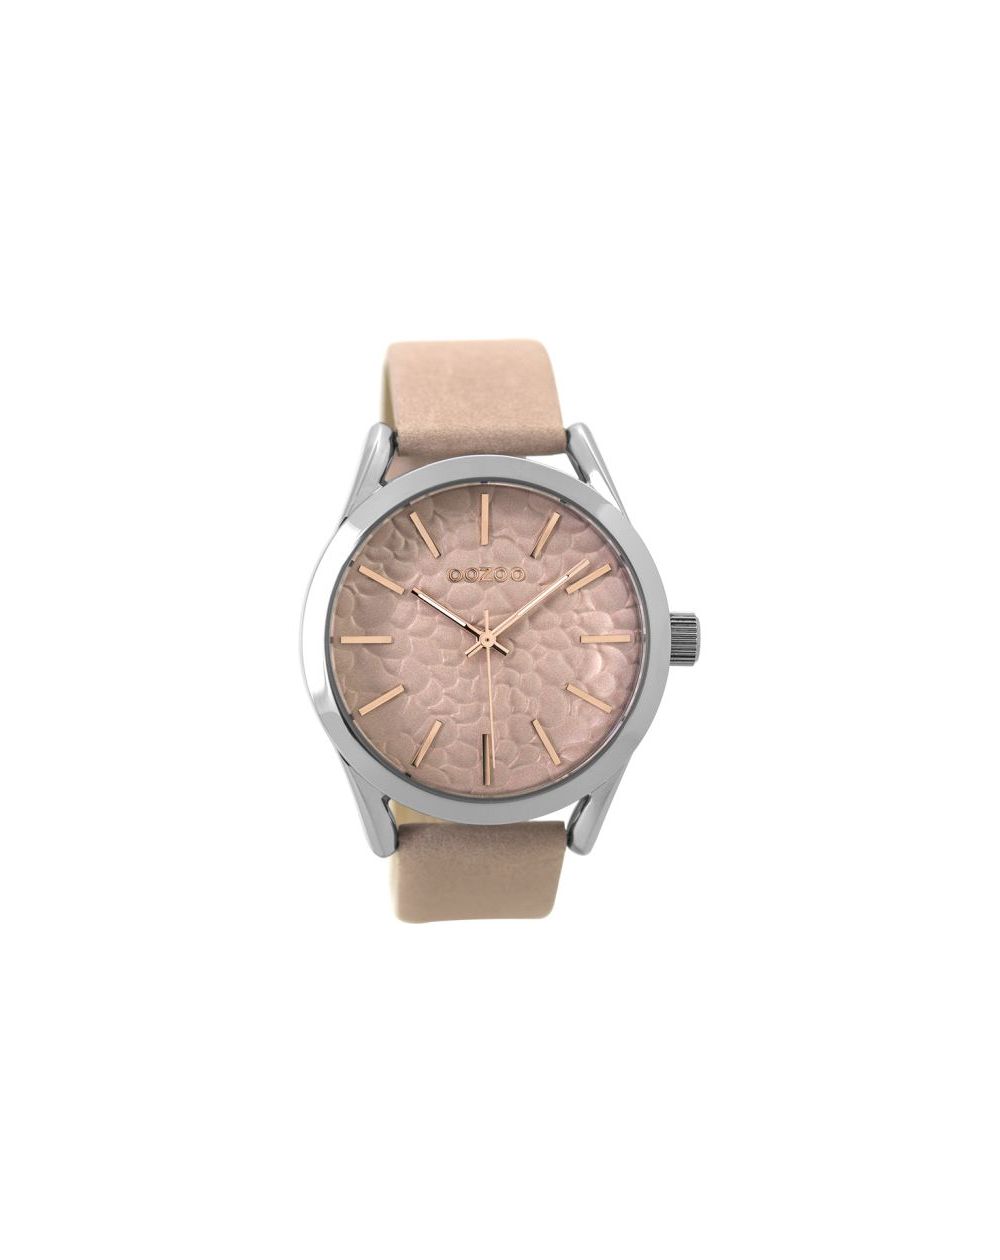 Oozoo montre/watch/horloge C9472